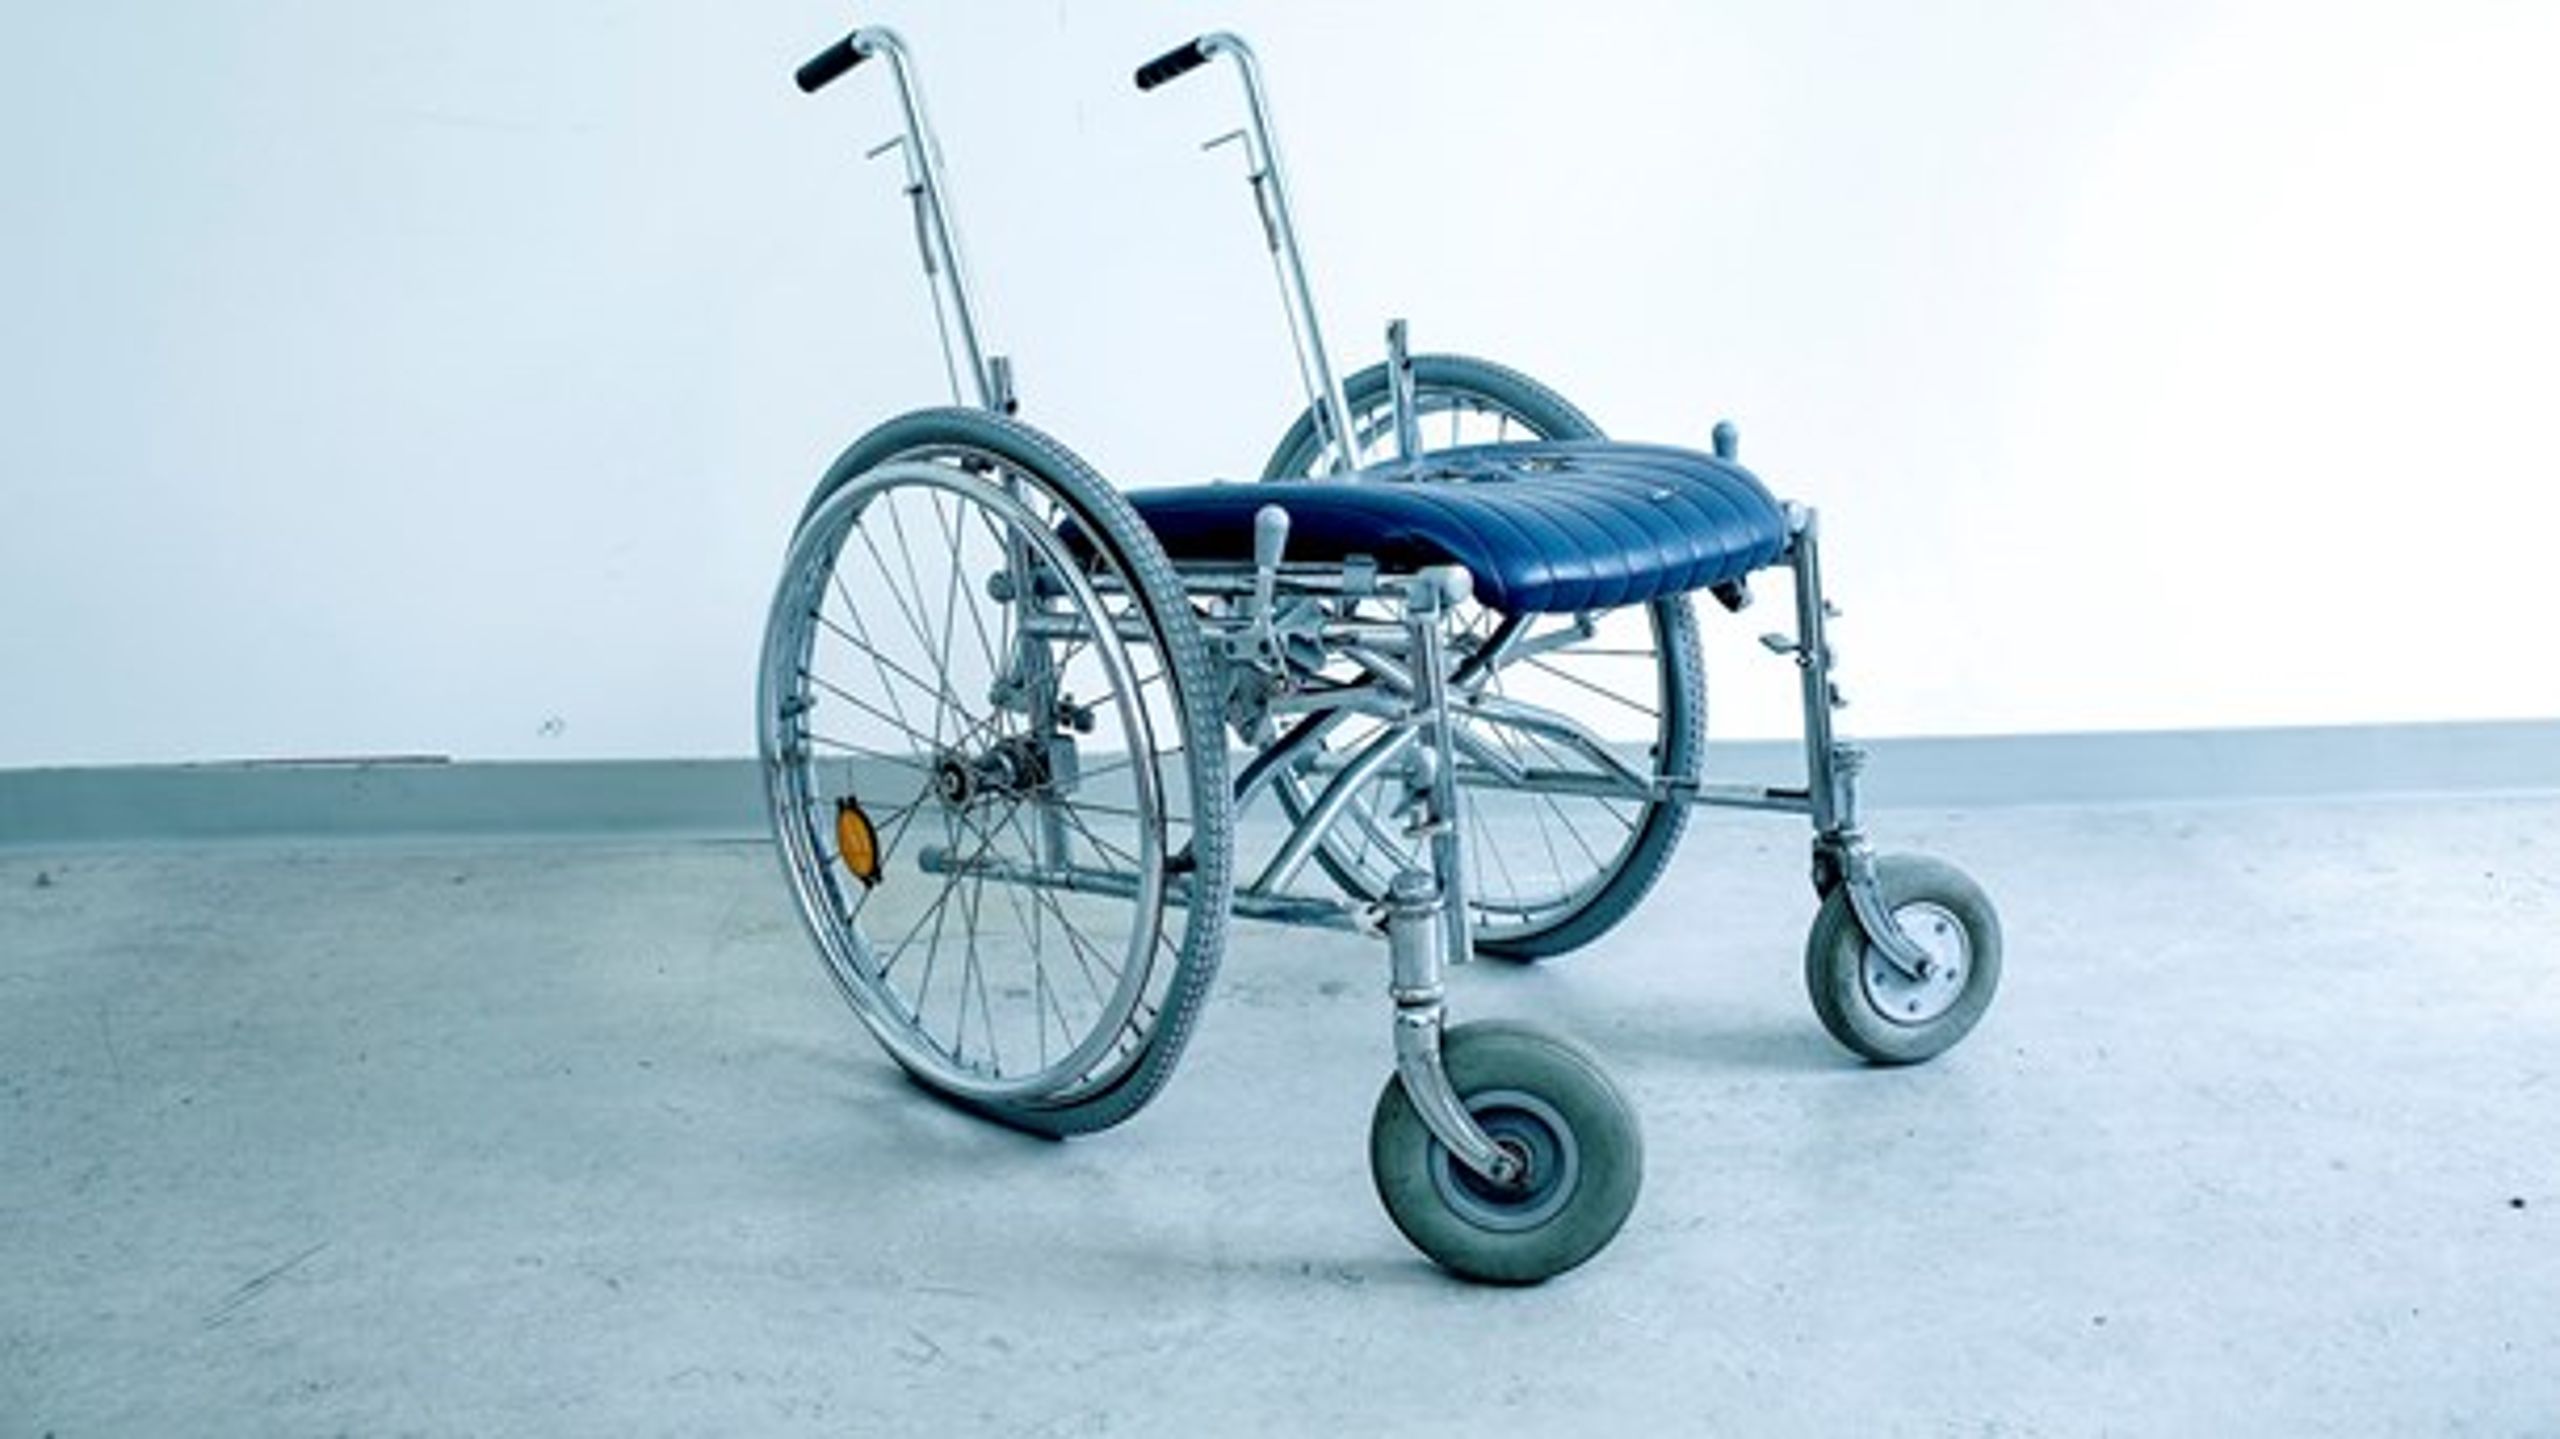 Der er kun jobs til halvdelen af de handicappede, der vil arbejde. Det er et problem, skriver Søren Gøtterup-Tang.